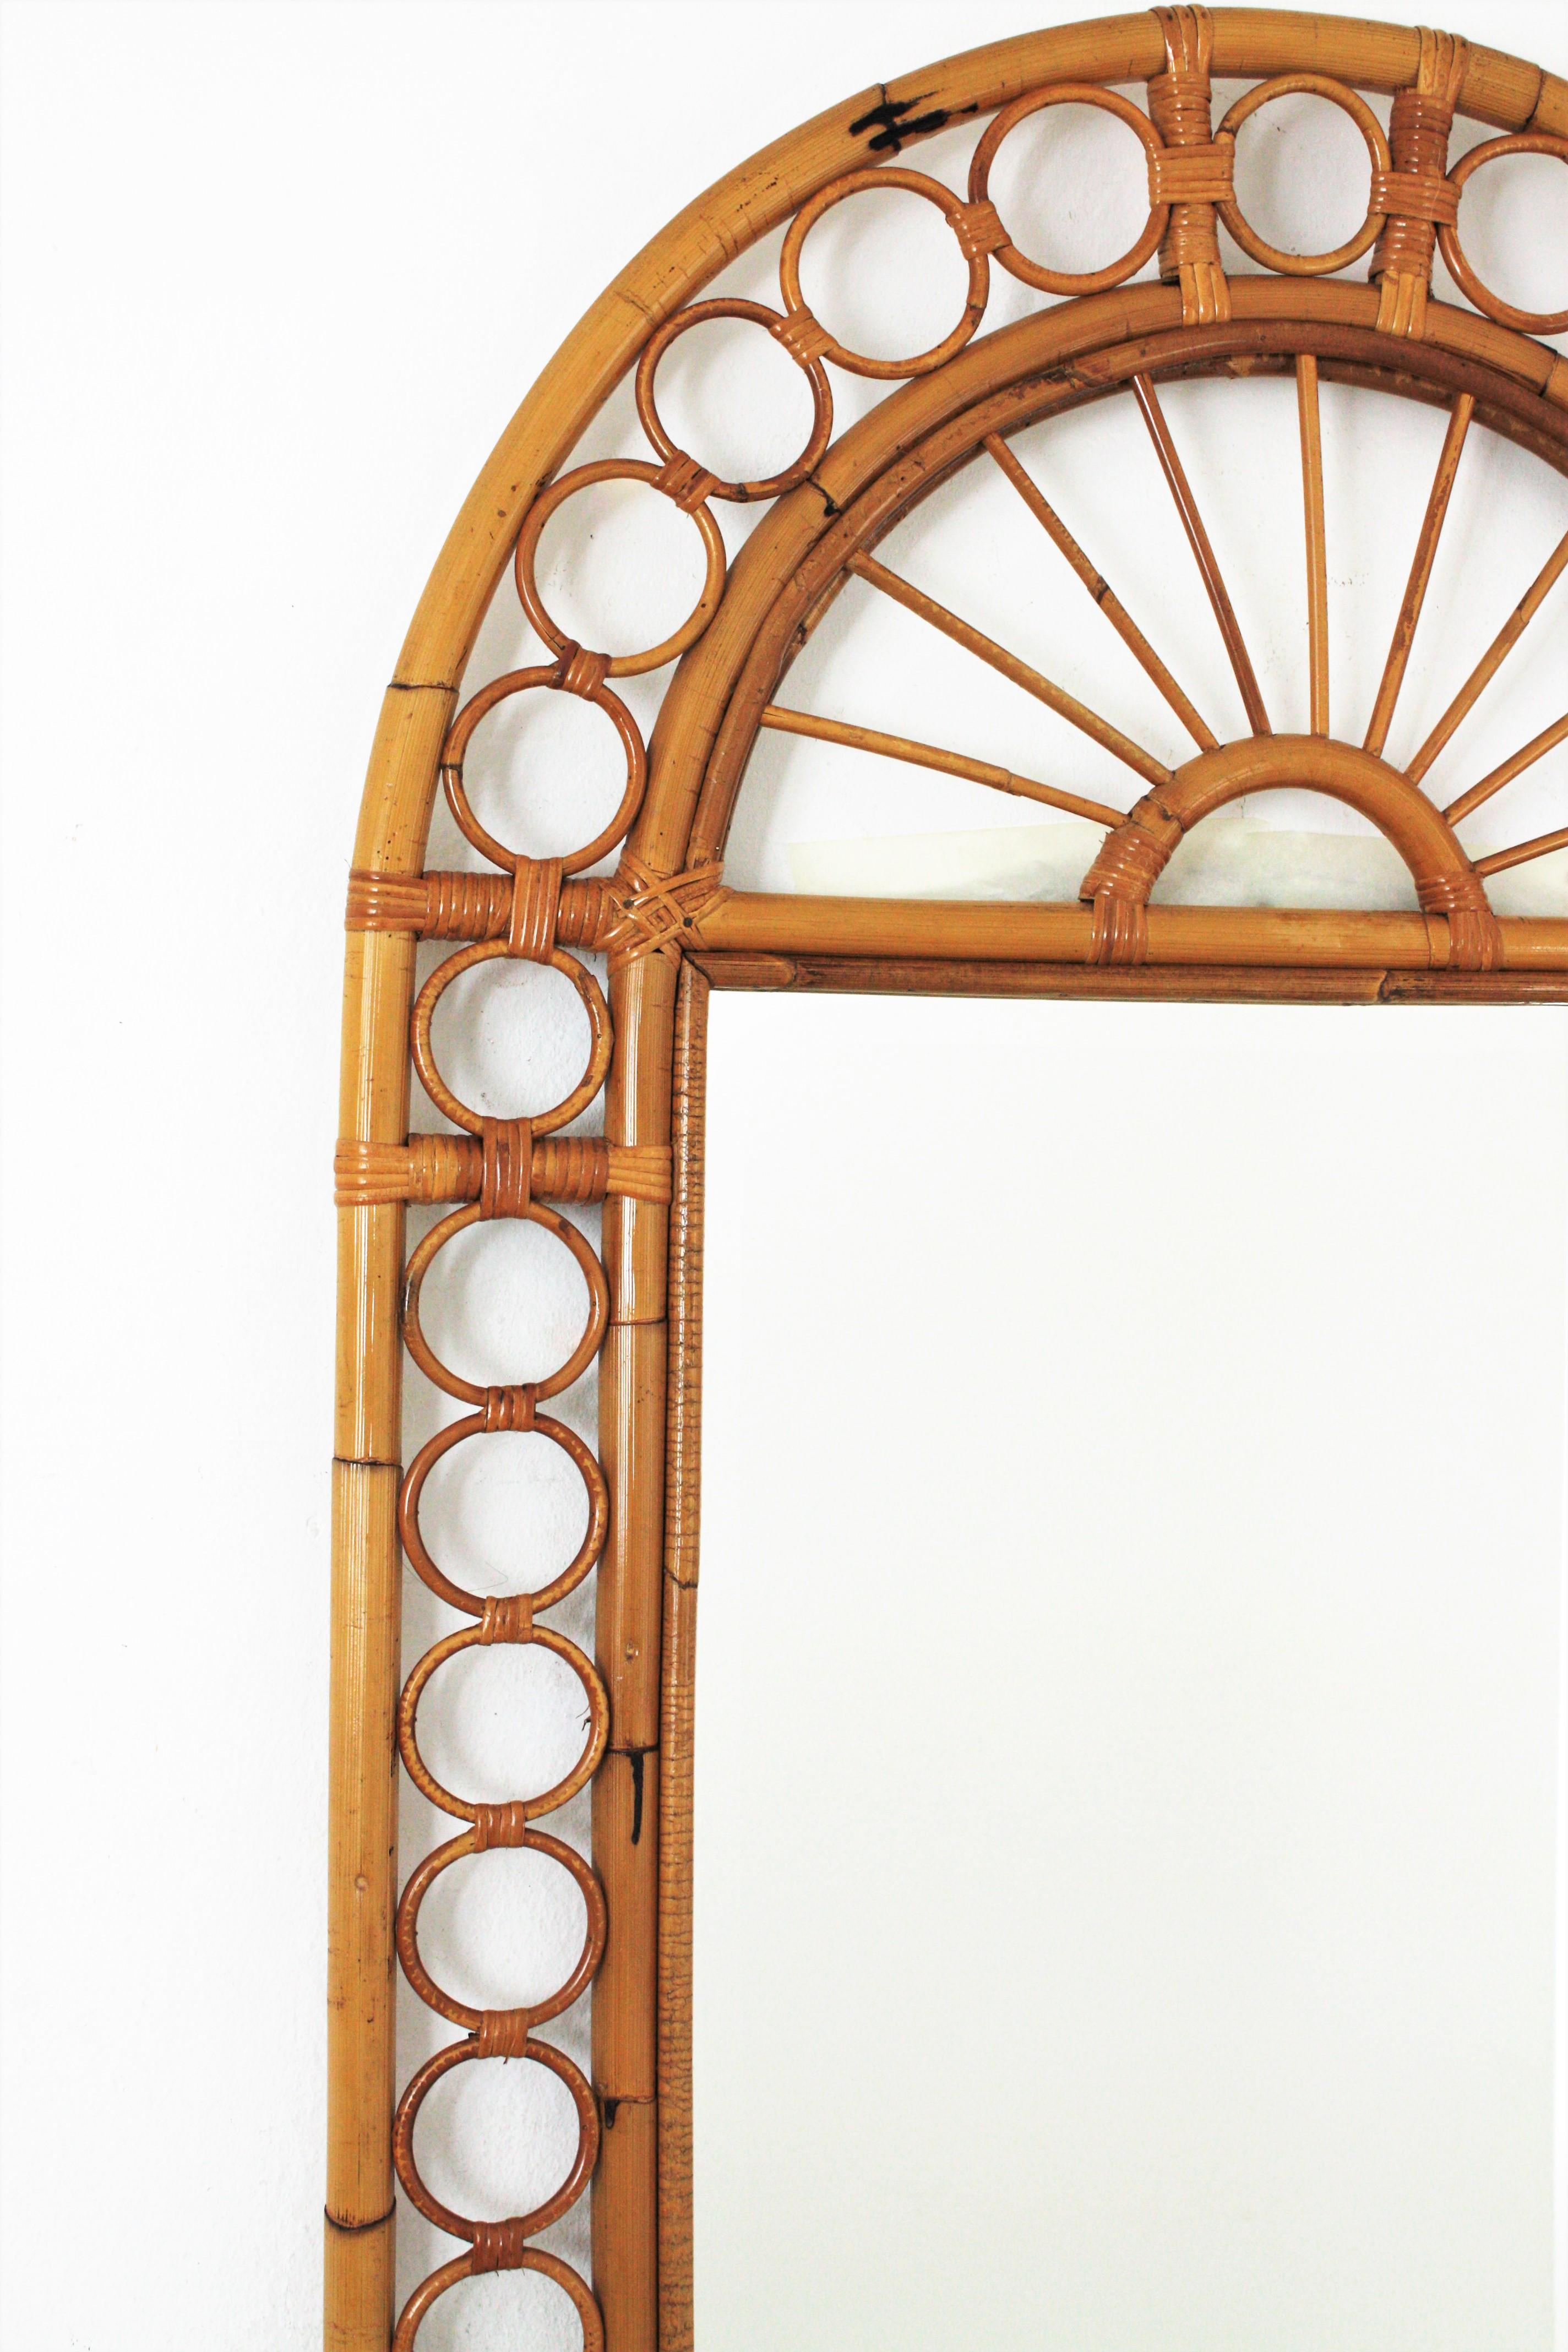 Italian Rattan Bamboo Wall Mirror with Rings Frame, Franco Albini Style